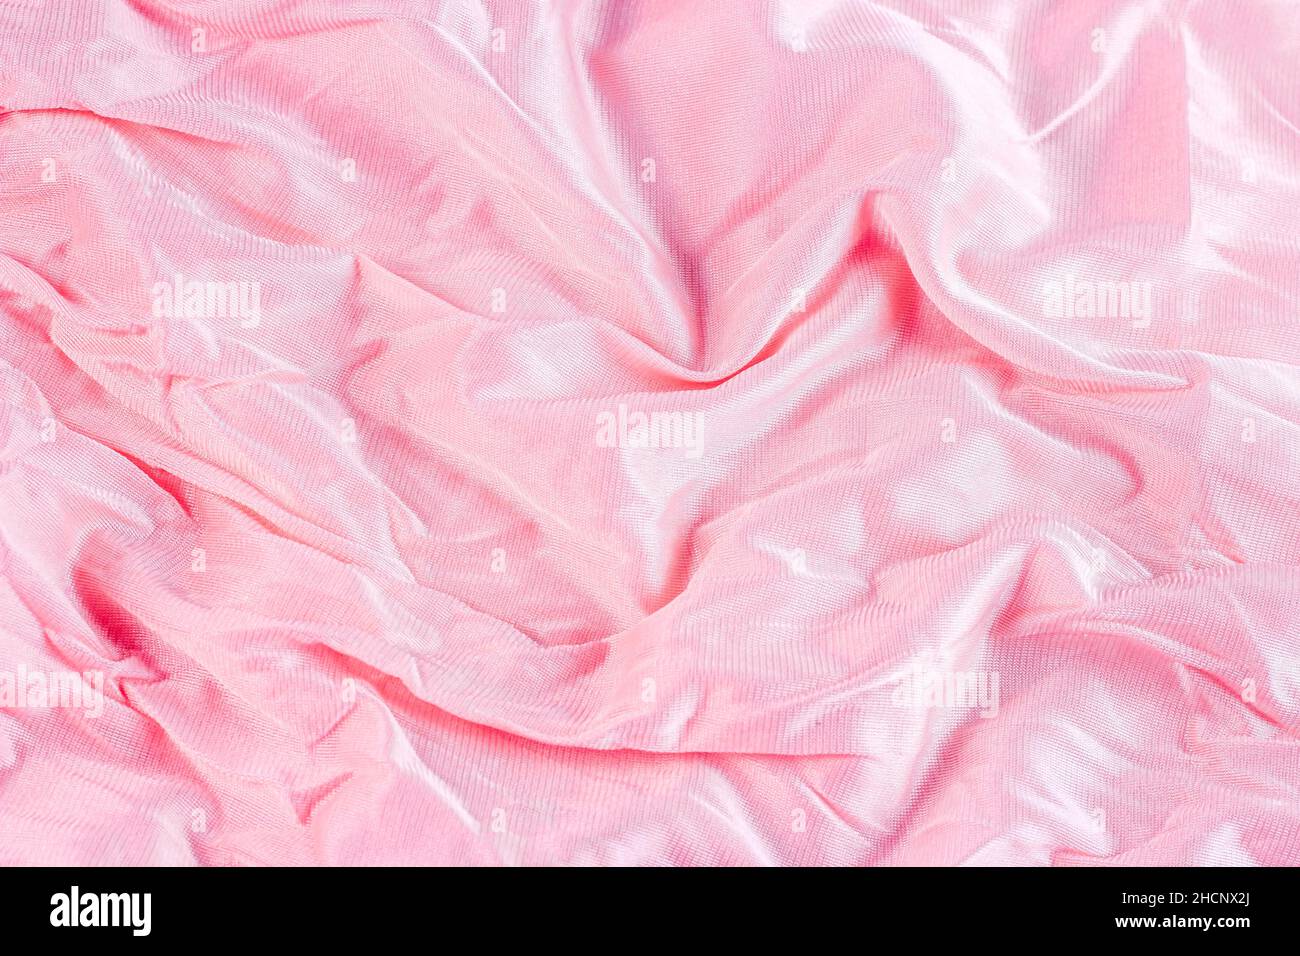 Colore rosa pastello chiaro nylon ondulato e motivo in poliammide come sfondo liscio testurizzato. Tendaggi in tessuto morbido di colore rosa pallido. Foto Stock